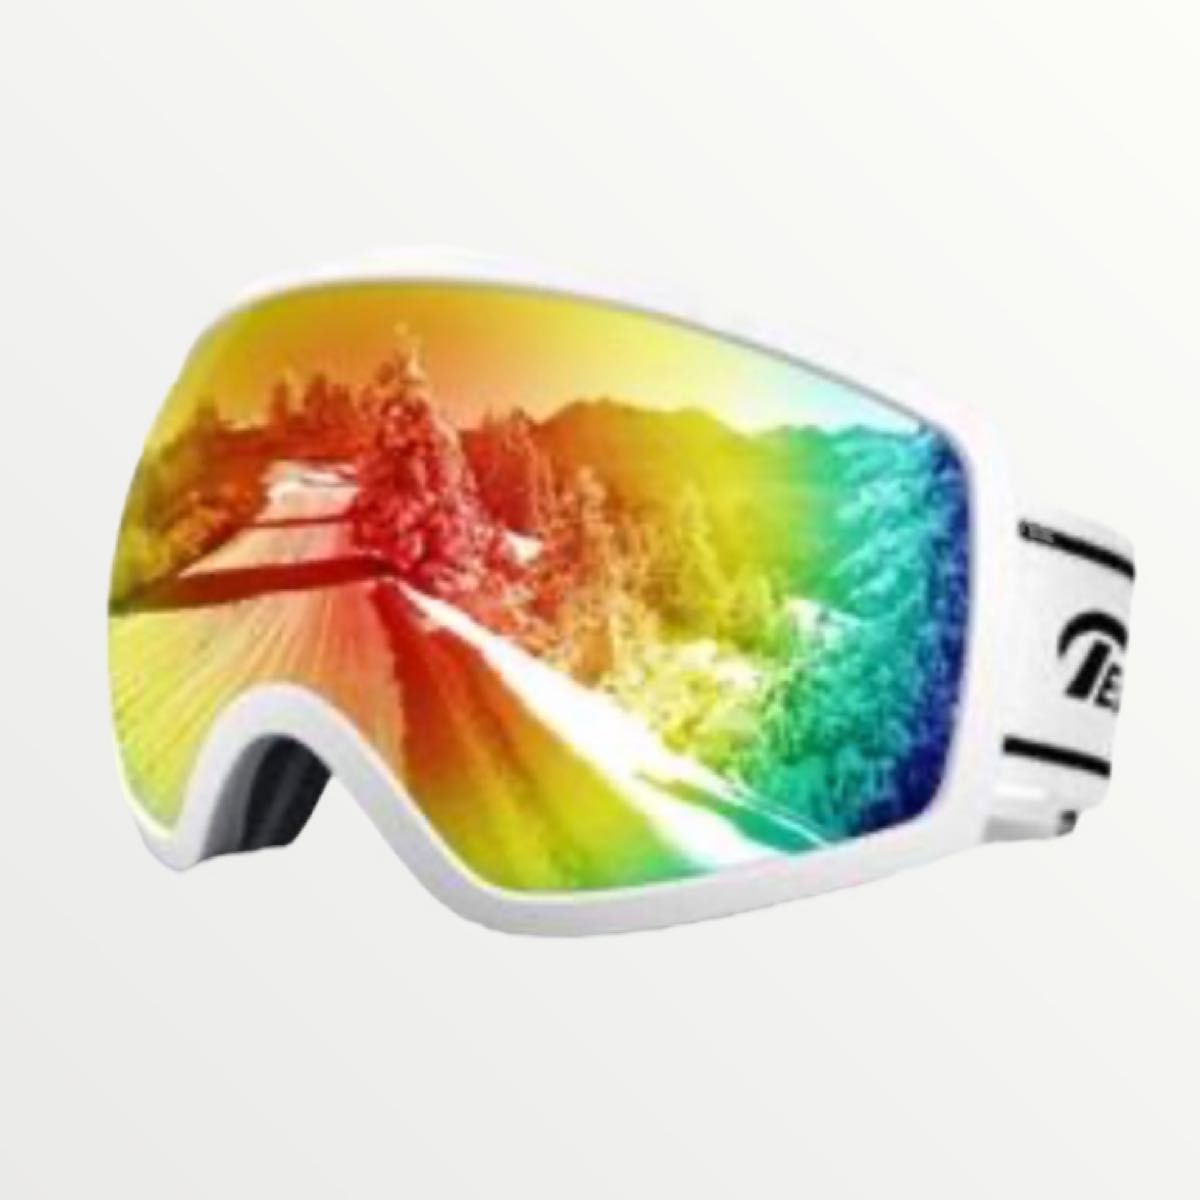 スキーゴーグル OTG広視野球面レンズ スノボ ゴーグル UV400 ホワイト